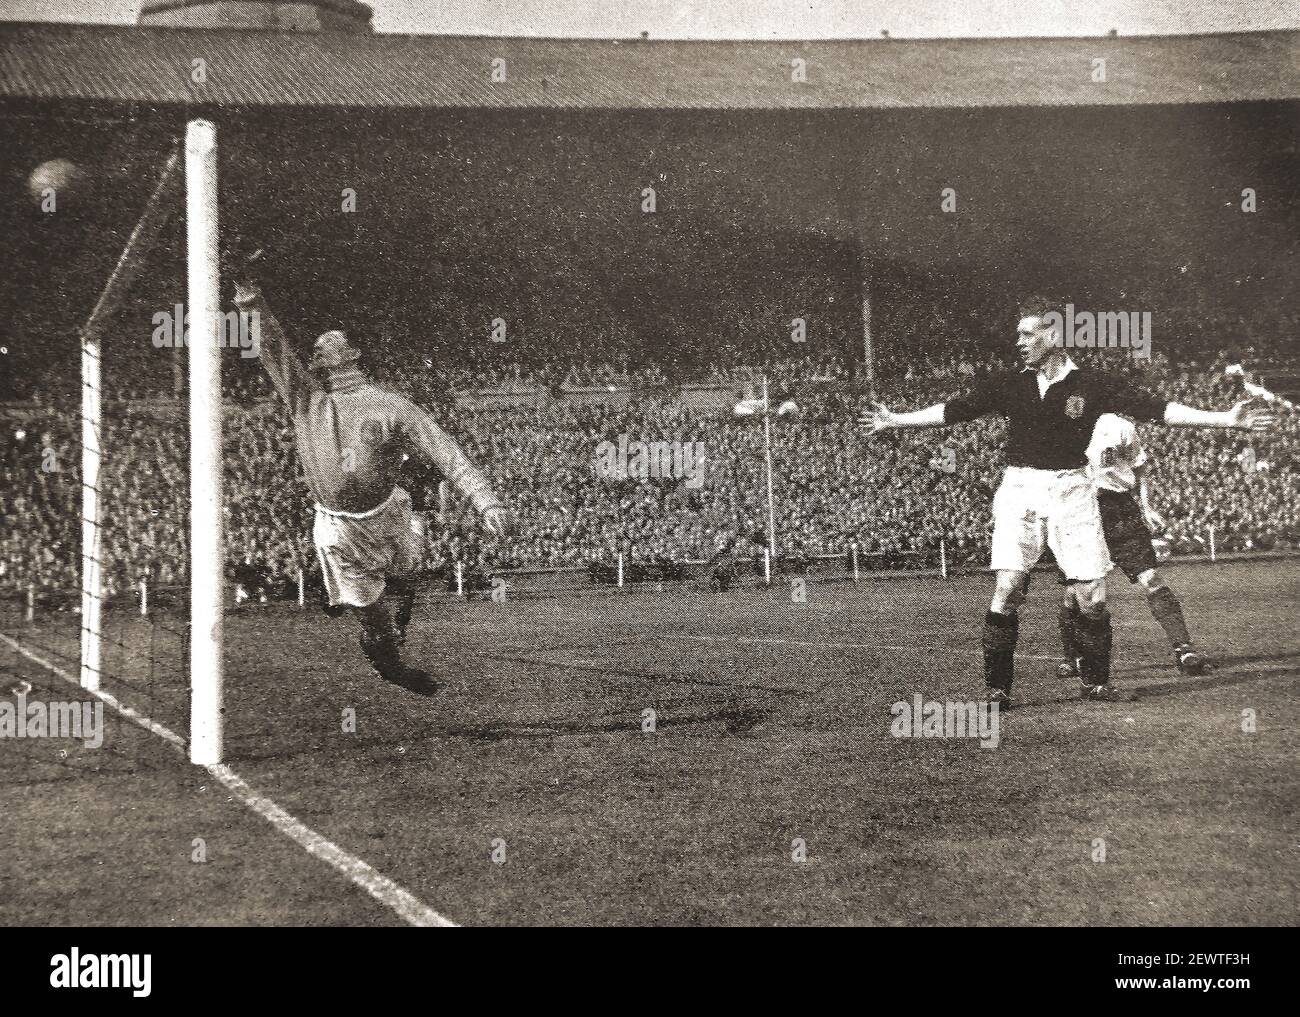 Ein altes Pressefoto eines Tores beim internationalen Fußballspiel 1947 zwischen England und Schottland in Webley, Engand. Stockfoto